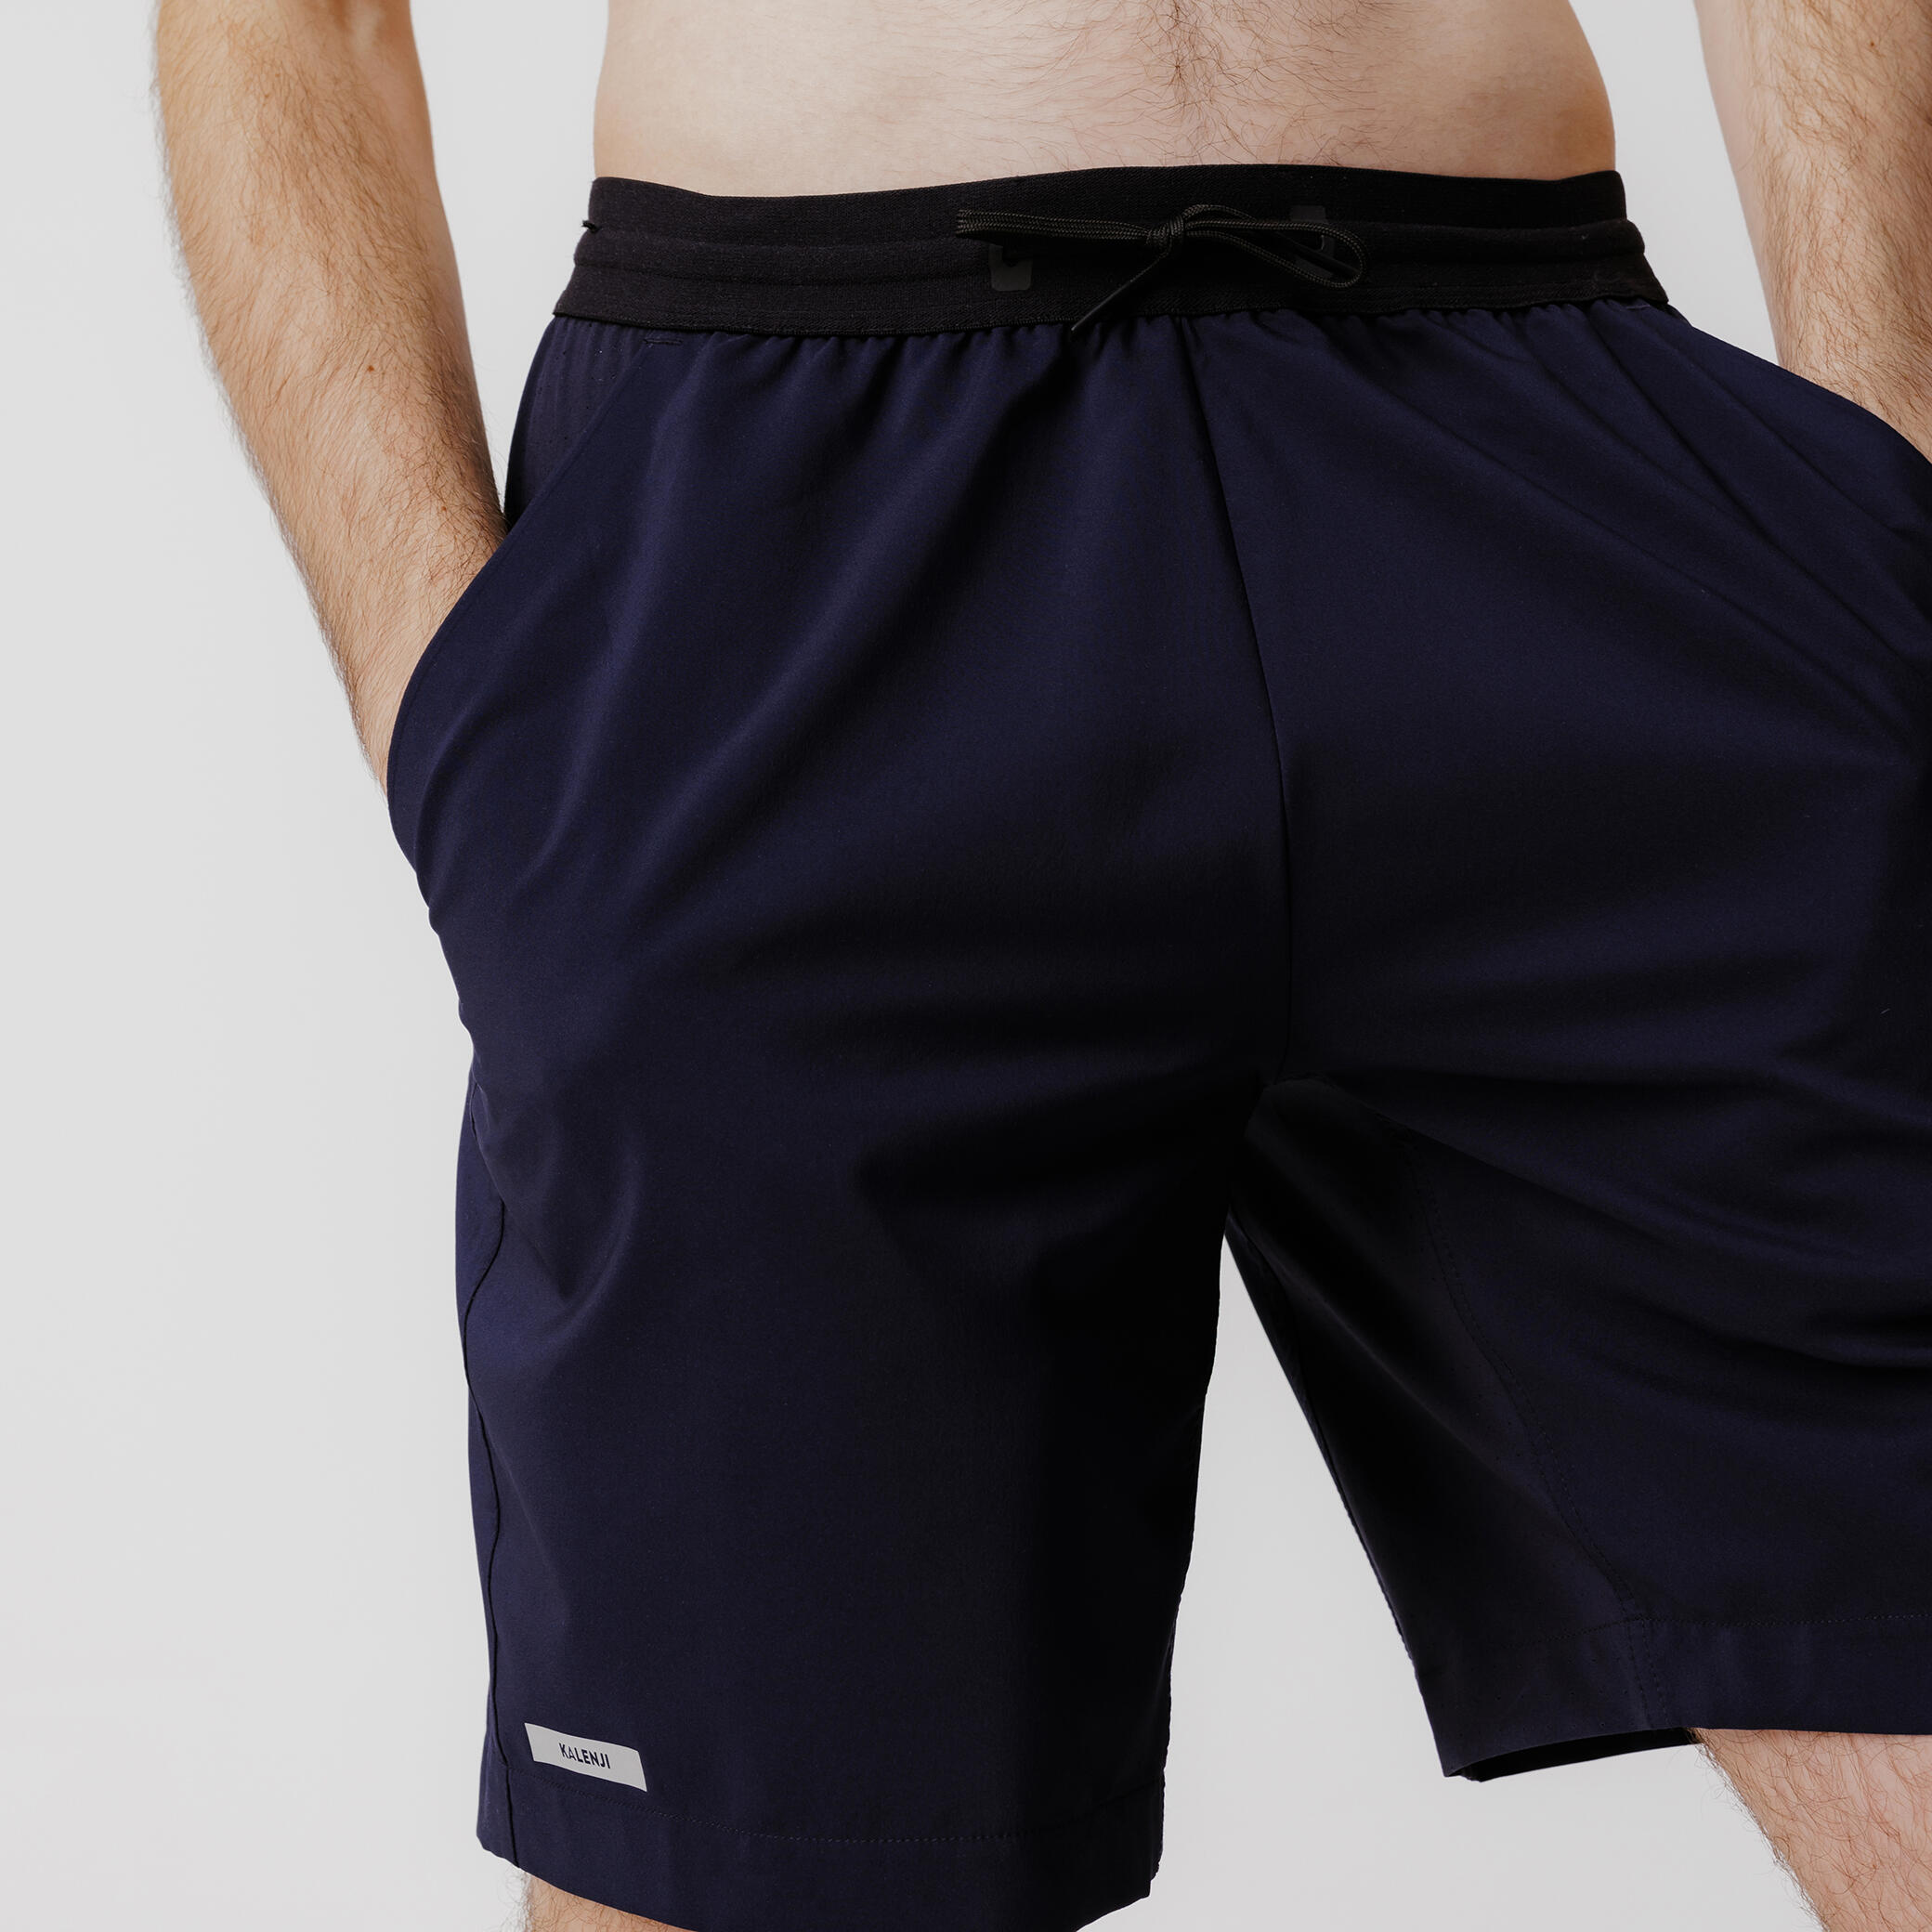 Buy Men Shorts Online